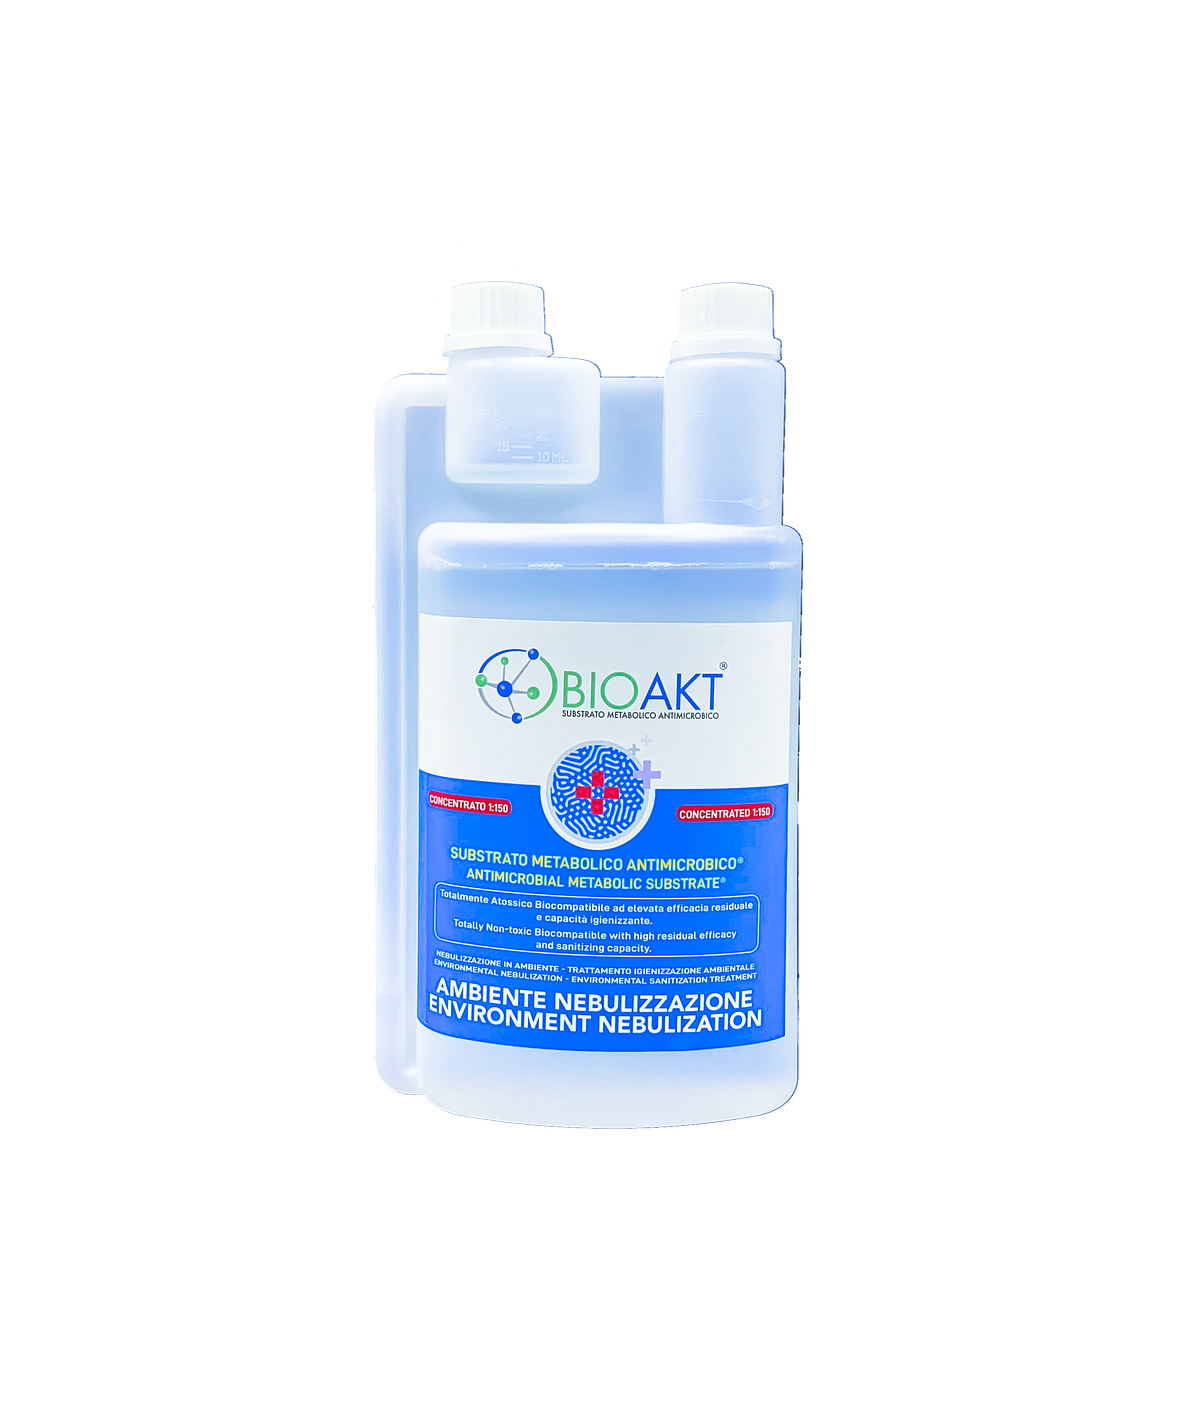 disinfettante-sanificaazione-ambiente-nebulizzazione-concentrato-bioakt-1L